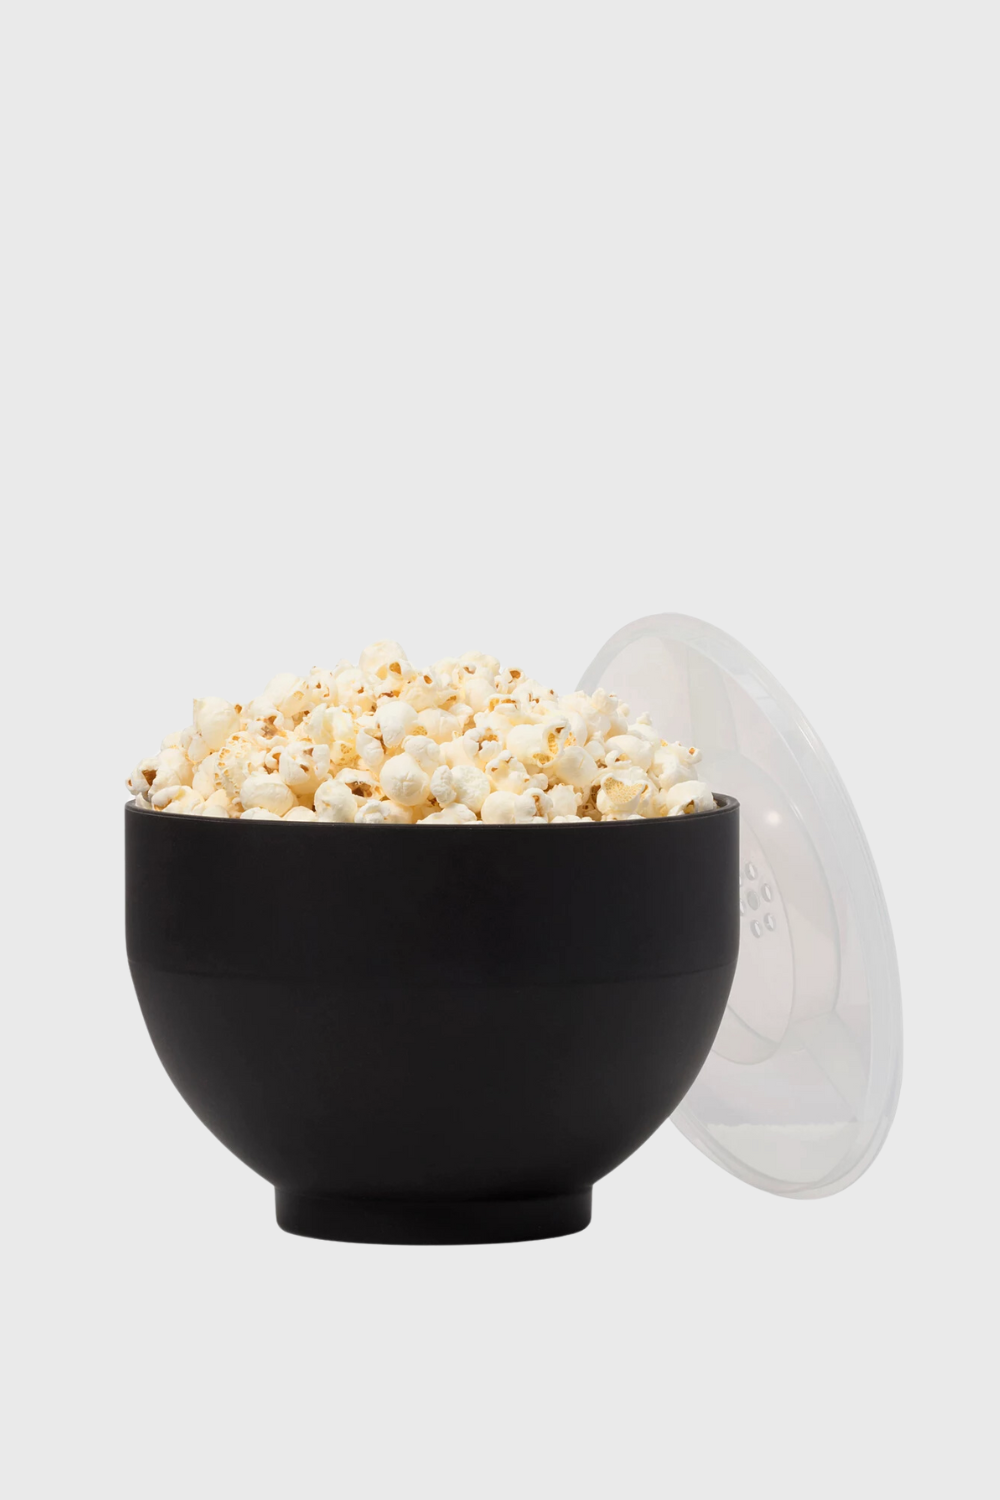 silicone popcorn popper